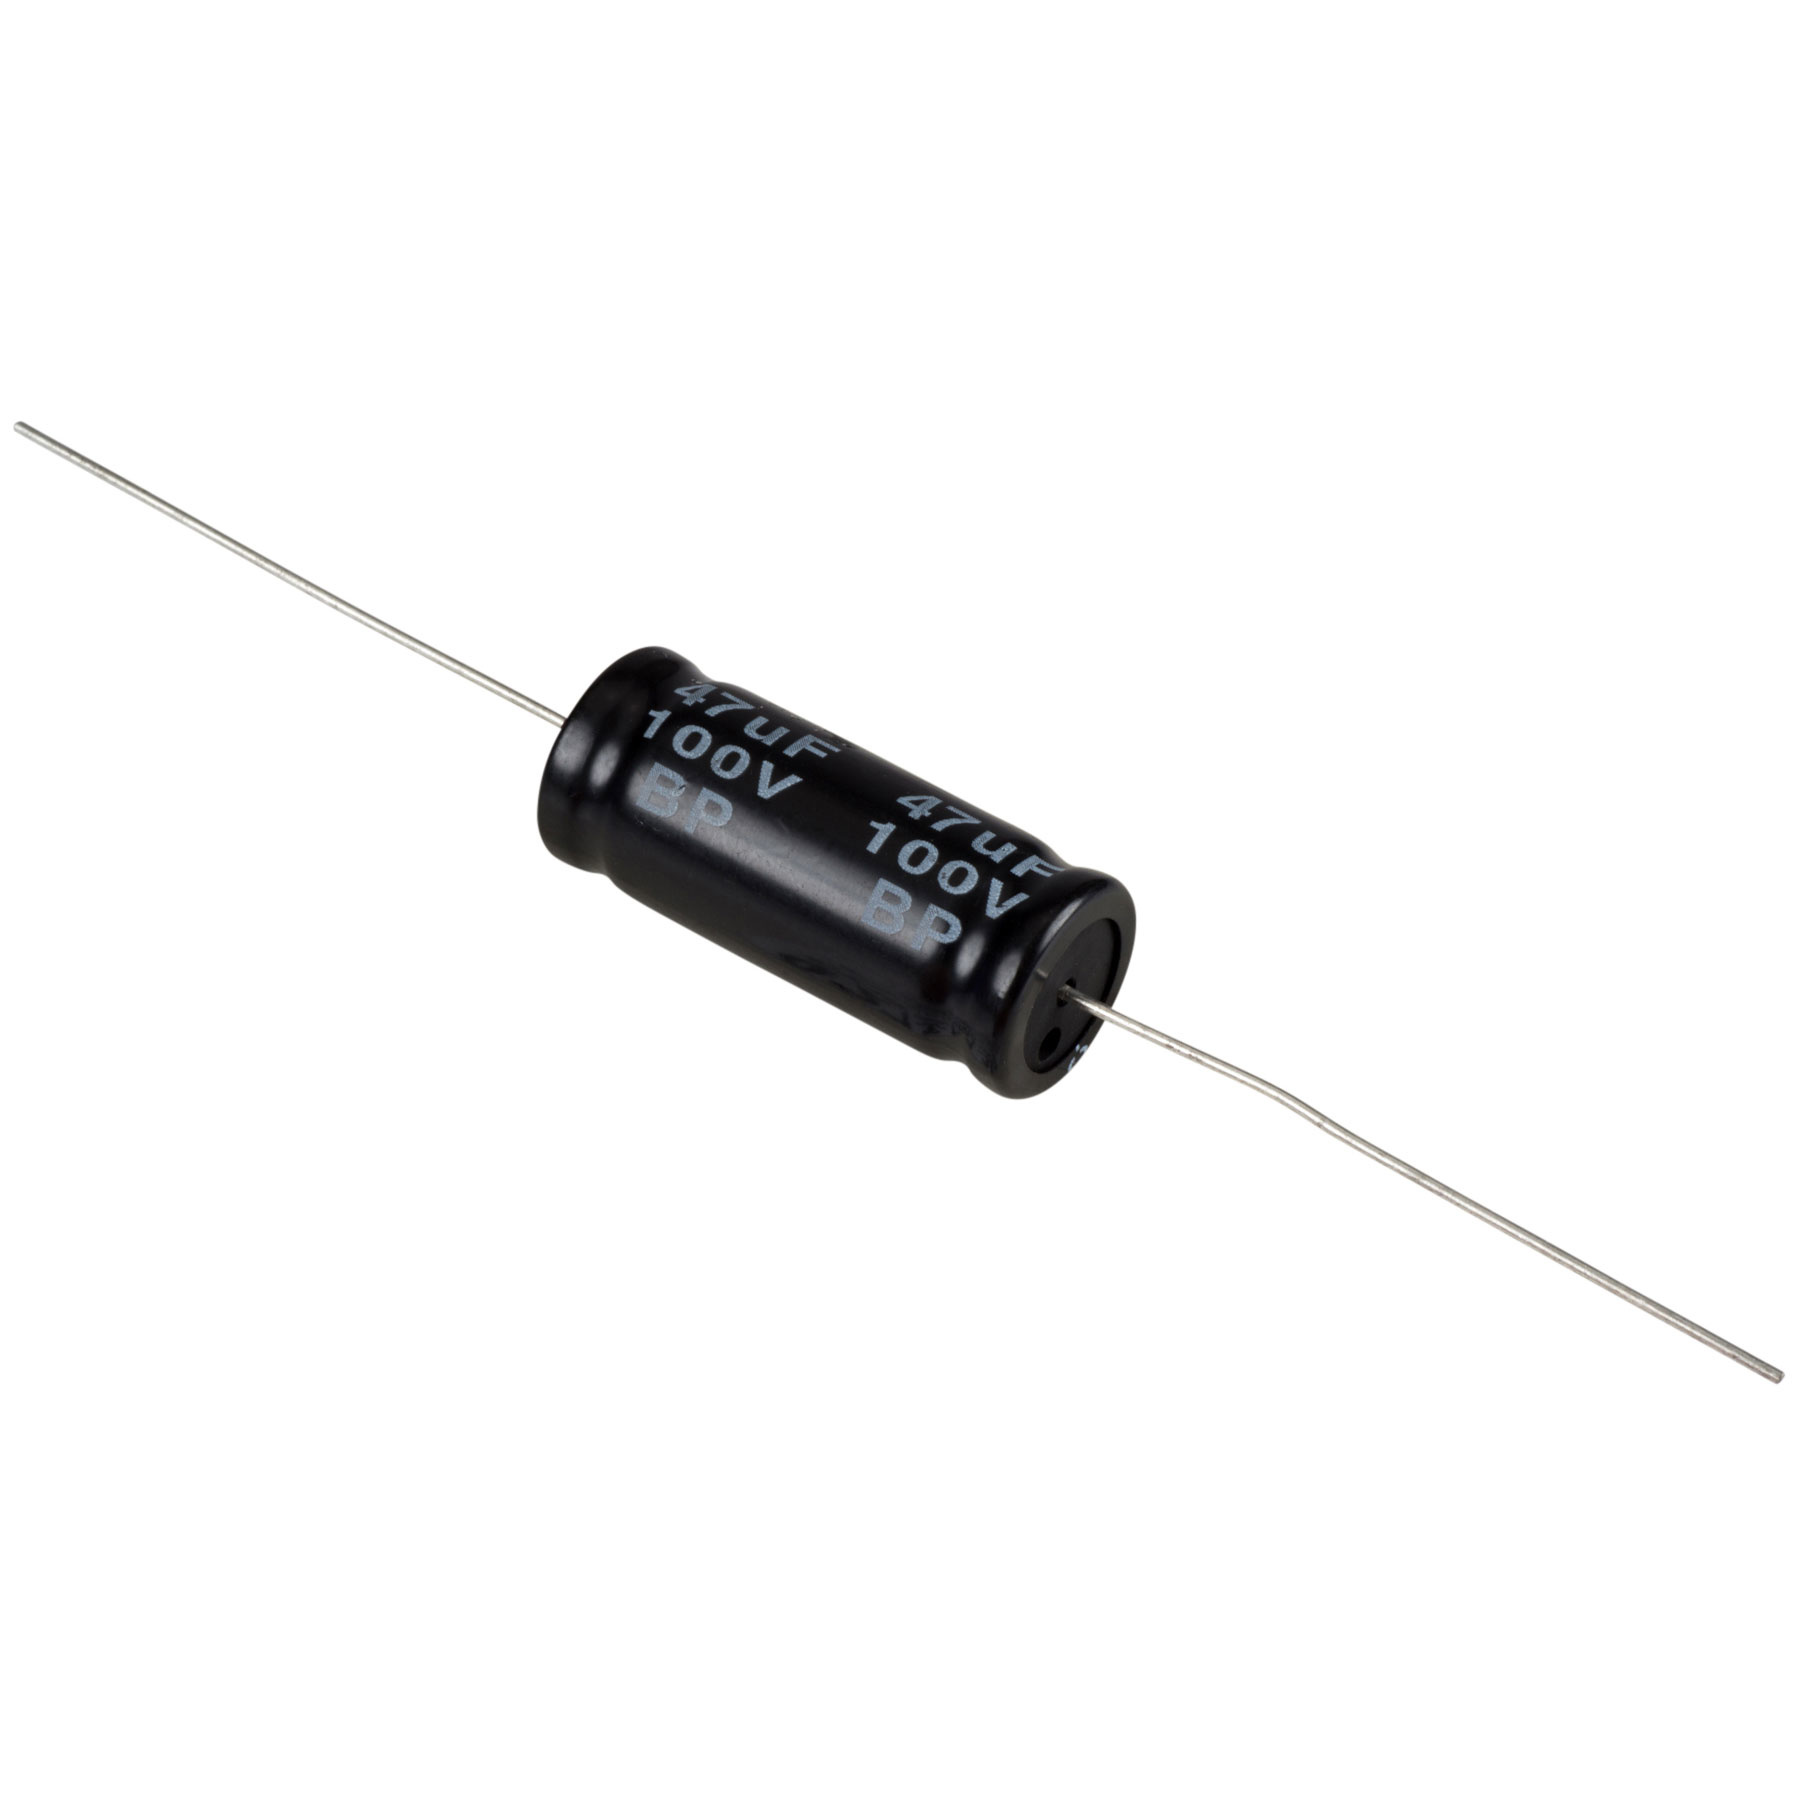 Condensatoare - Condensator electrolitic bipolar 47 µF | 10% | 100 V, audioclub.ro